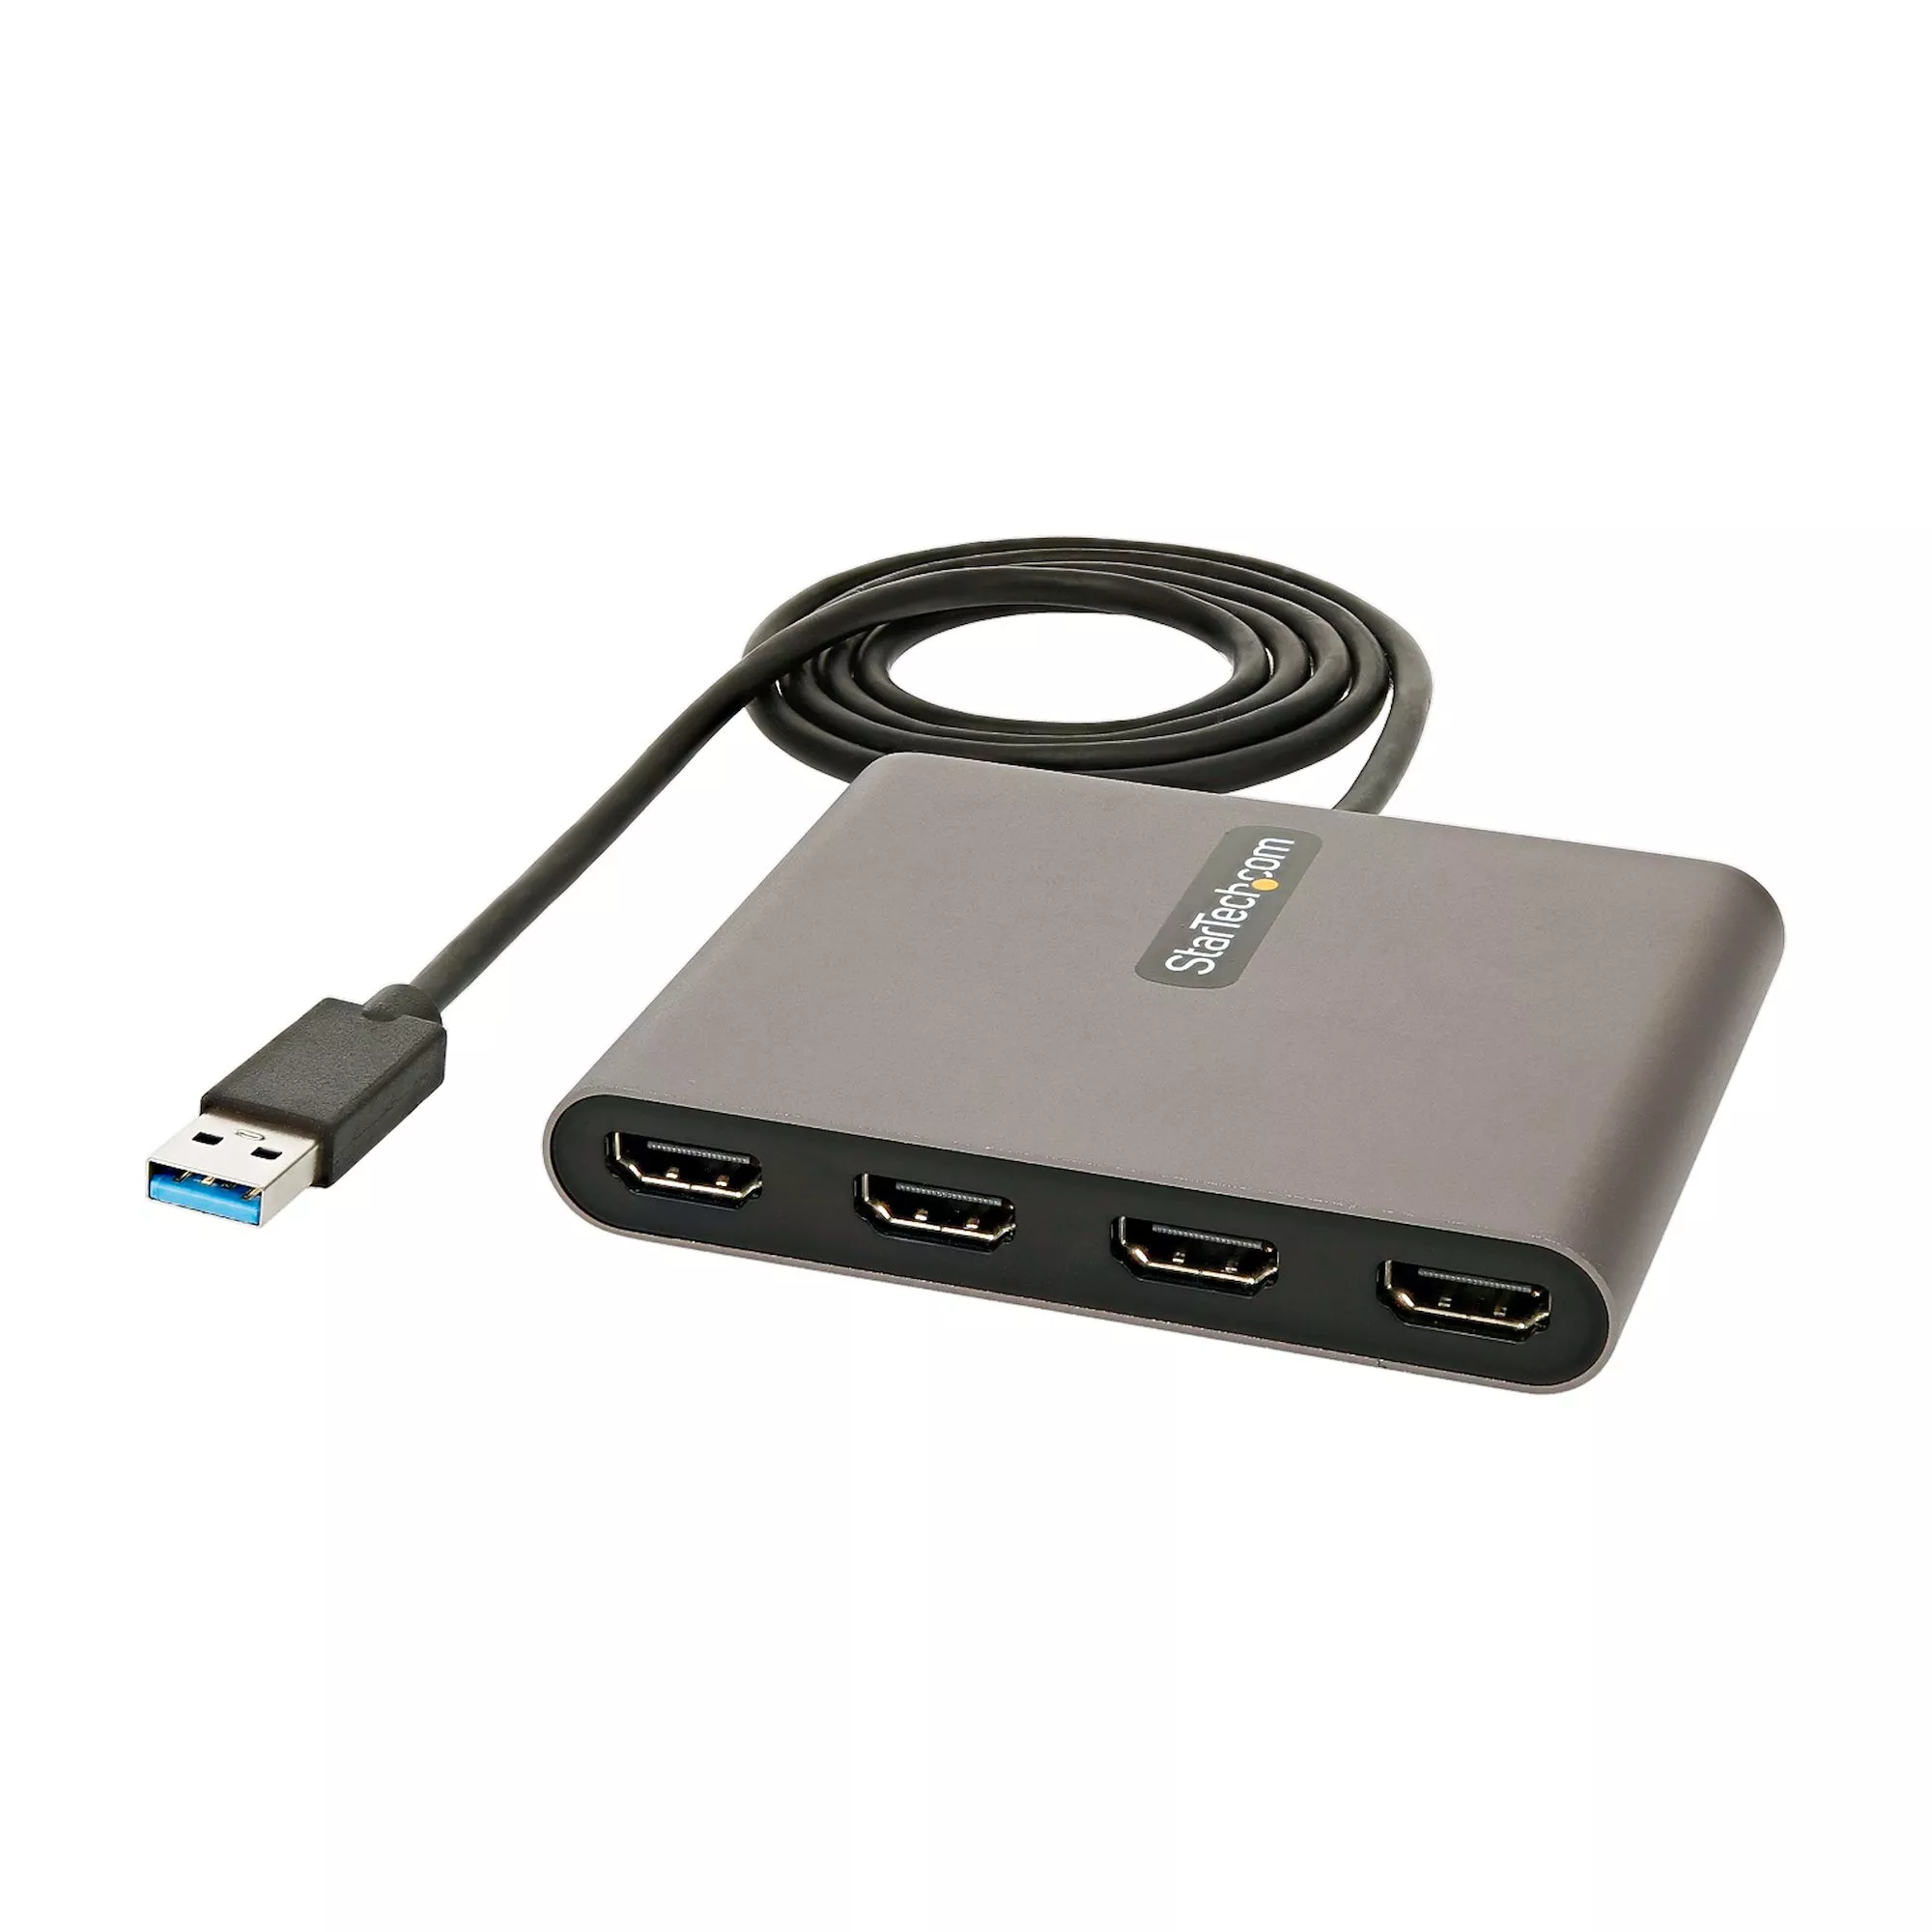 Revendeur officiel Câble HDMI StarTech.com Adaptateur USB 3.0 vers 4x HDMI - Carte Vidéo